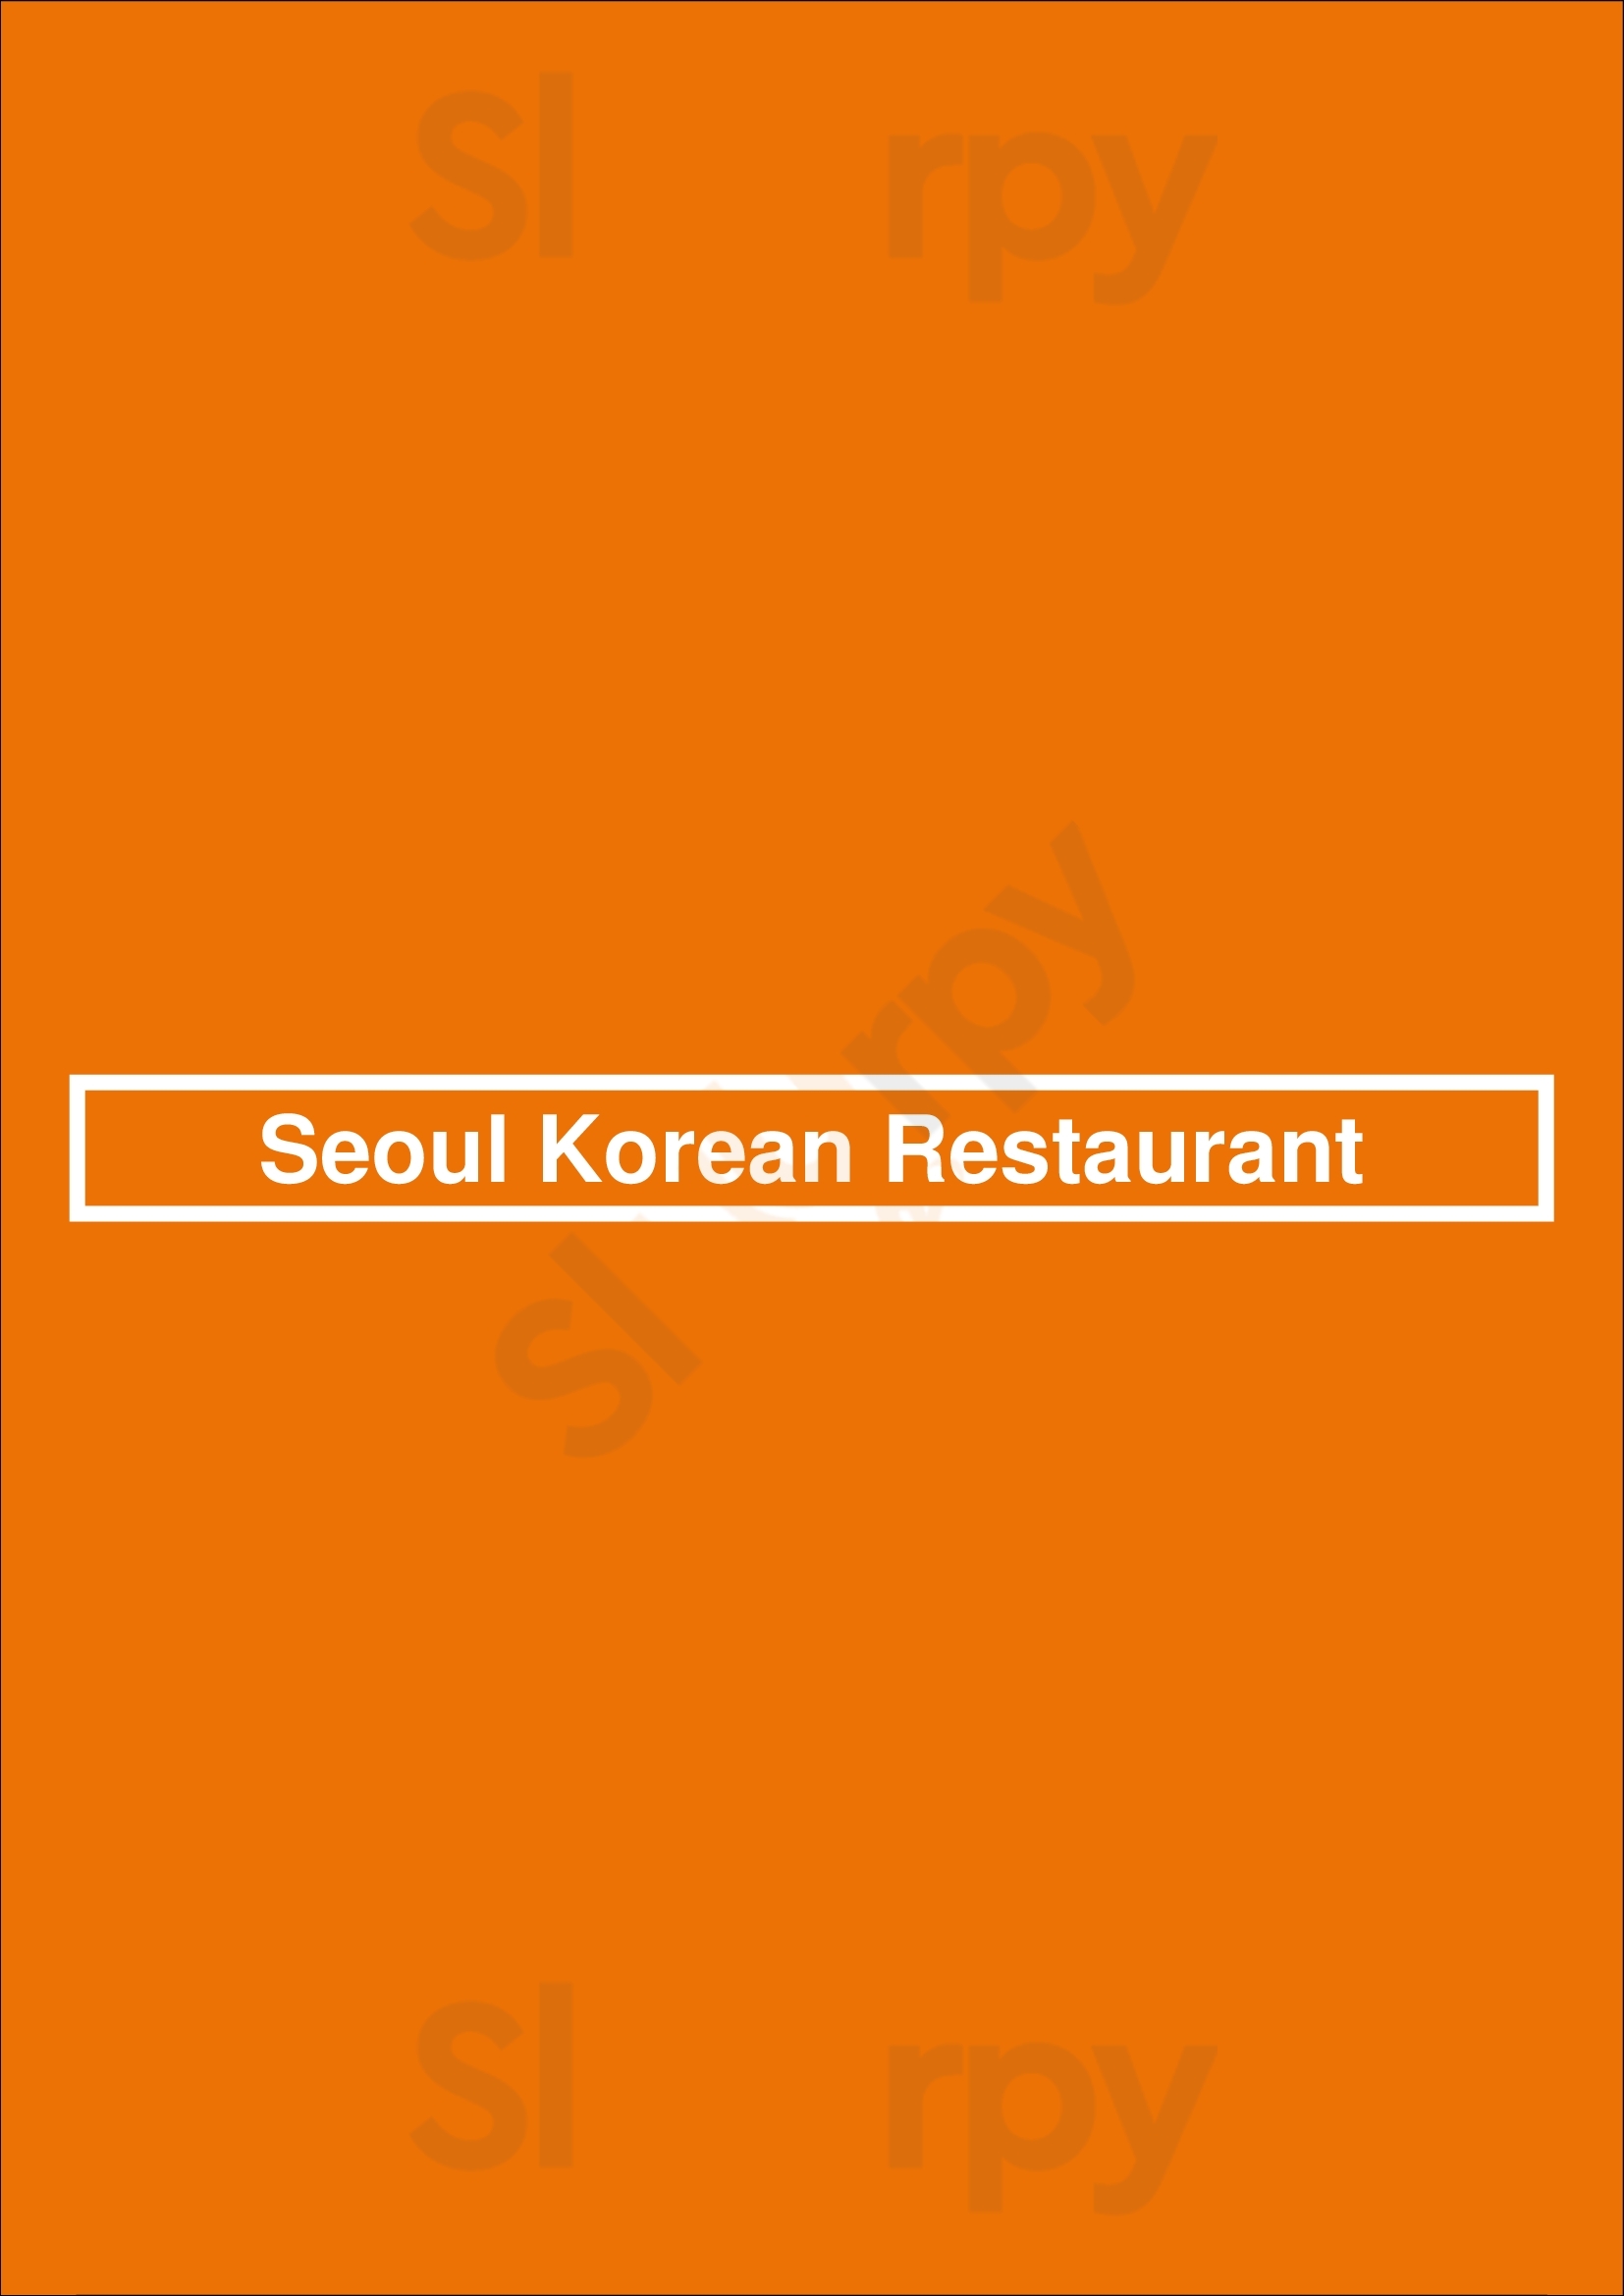 Seoul Korean Restaurant Calgary Menu - 1